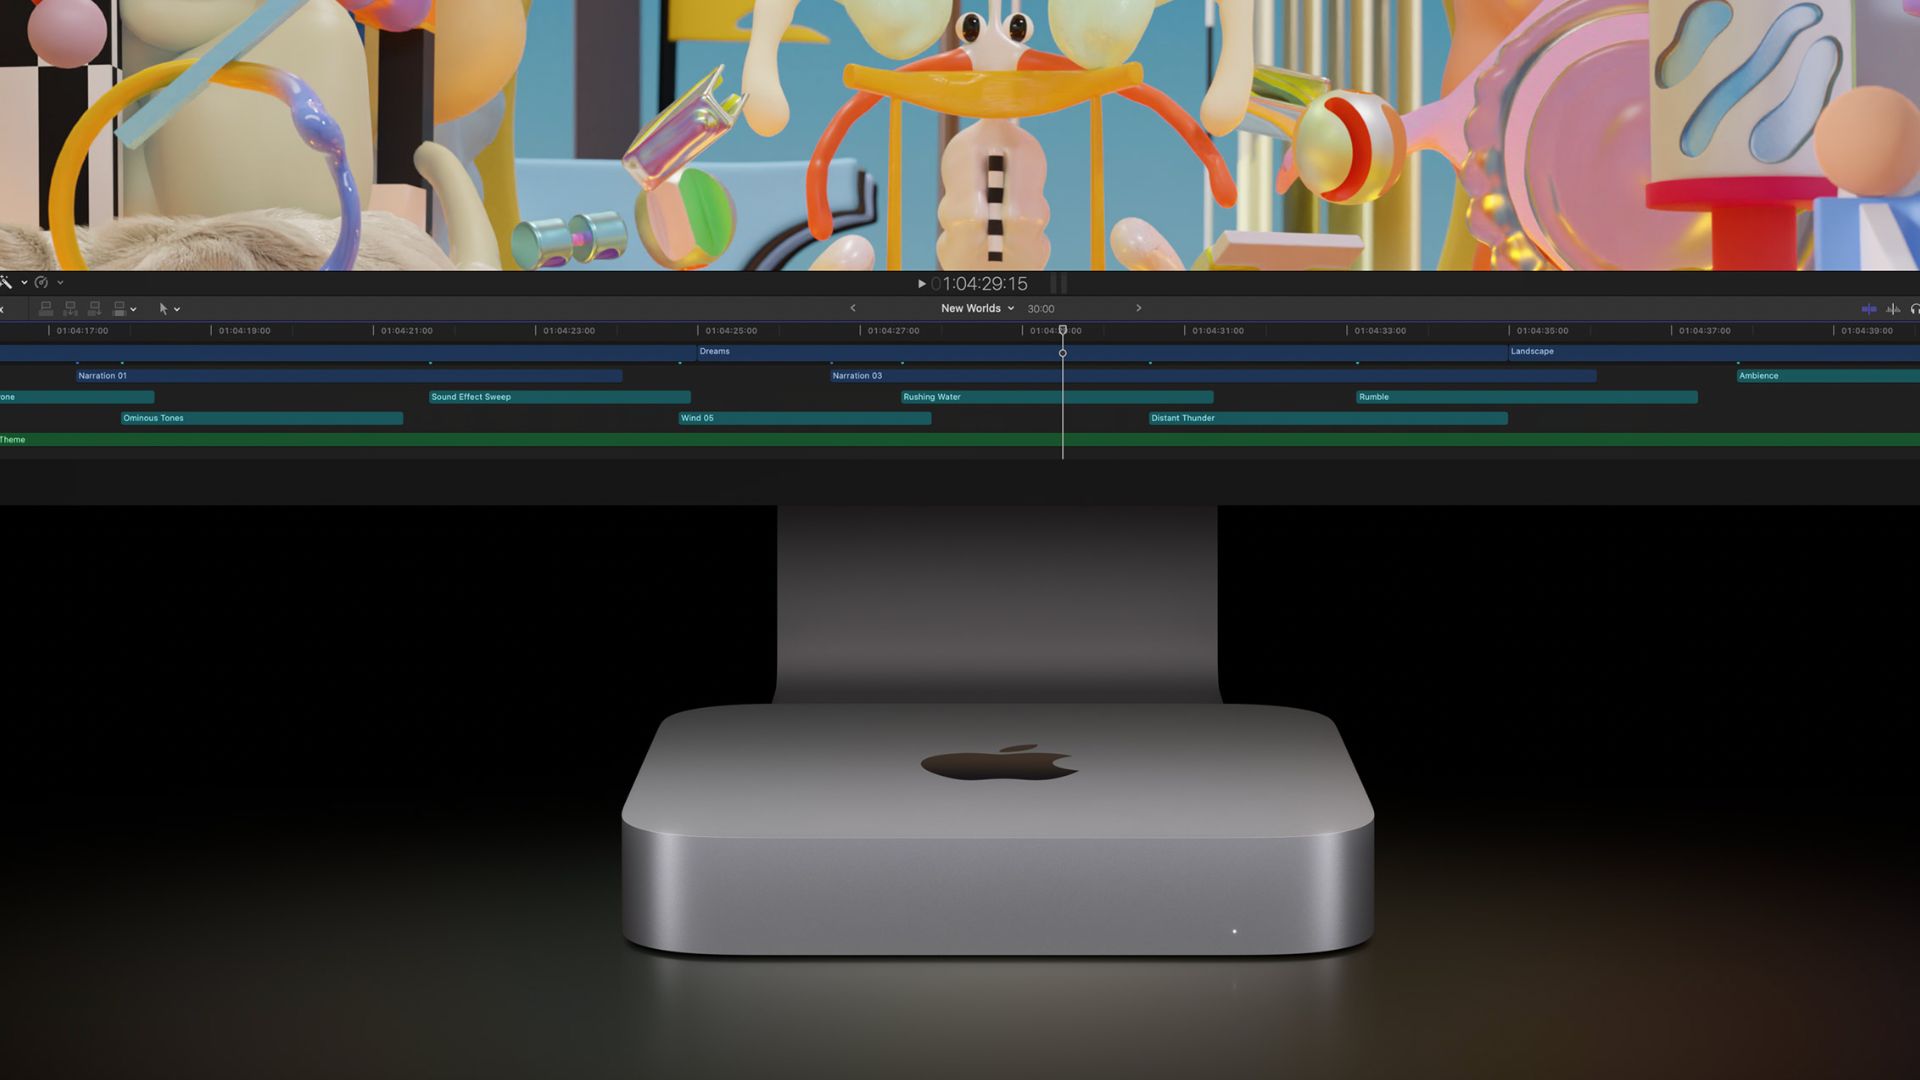 Le MacBook Pro 13 pouces 2019 est en stock et légèrement moins